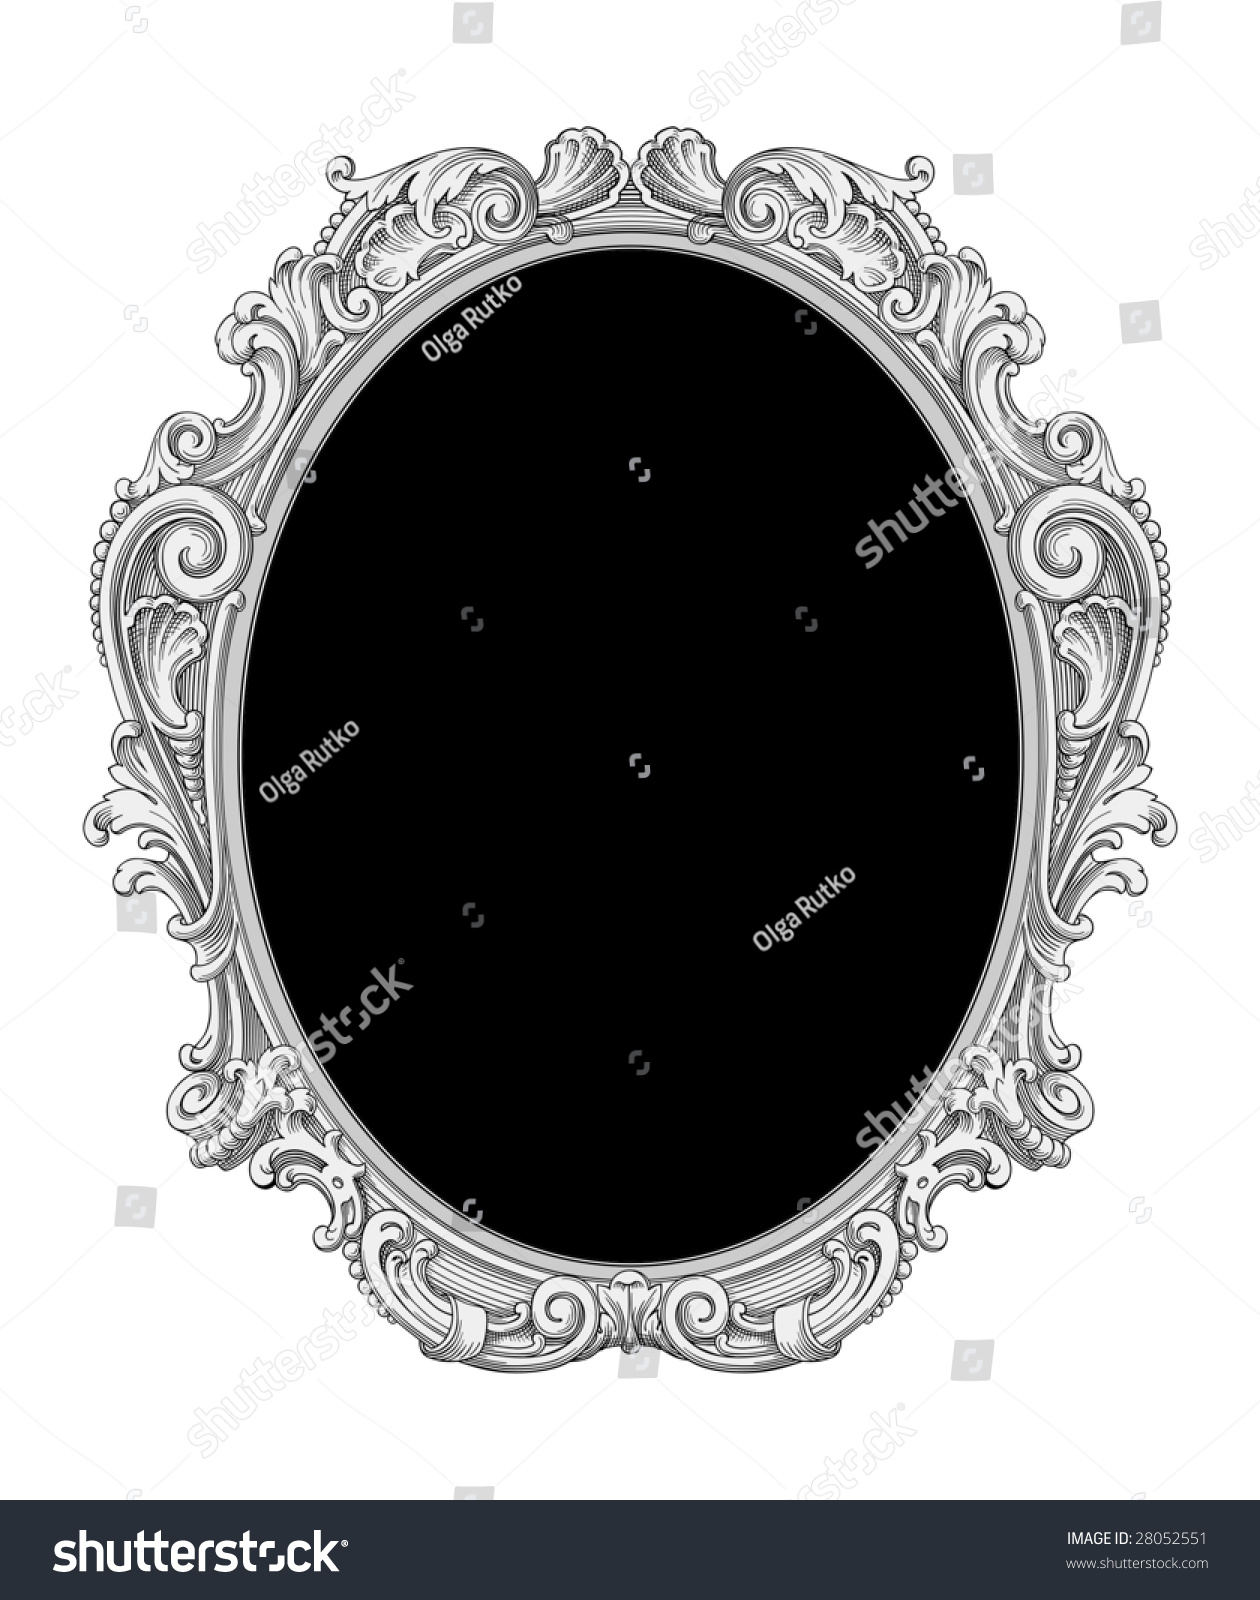 Ornate Frame Vector - 28052551 : Shutterstock